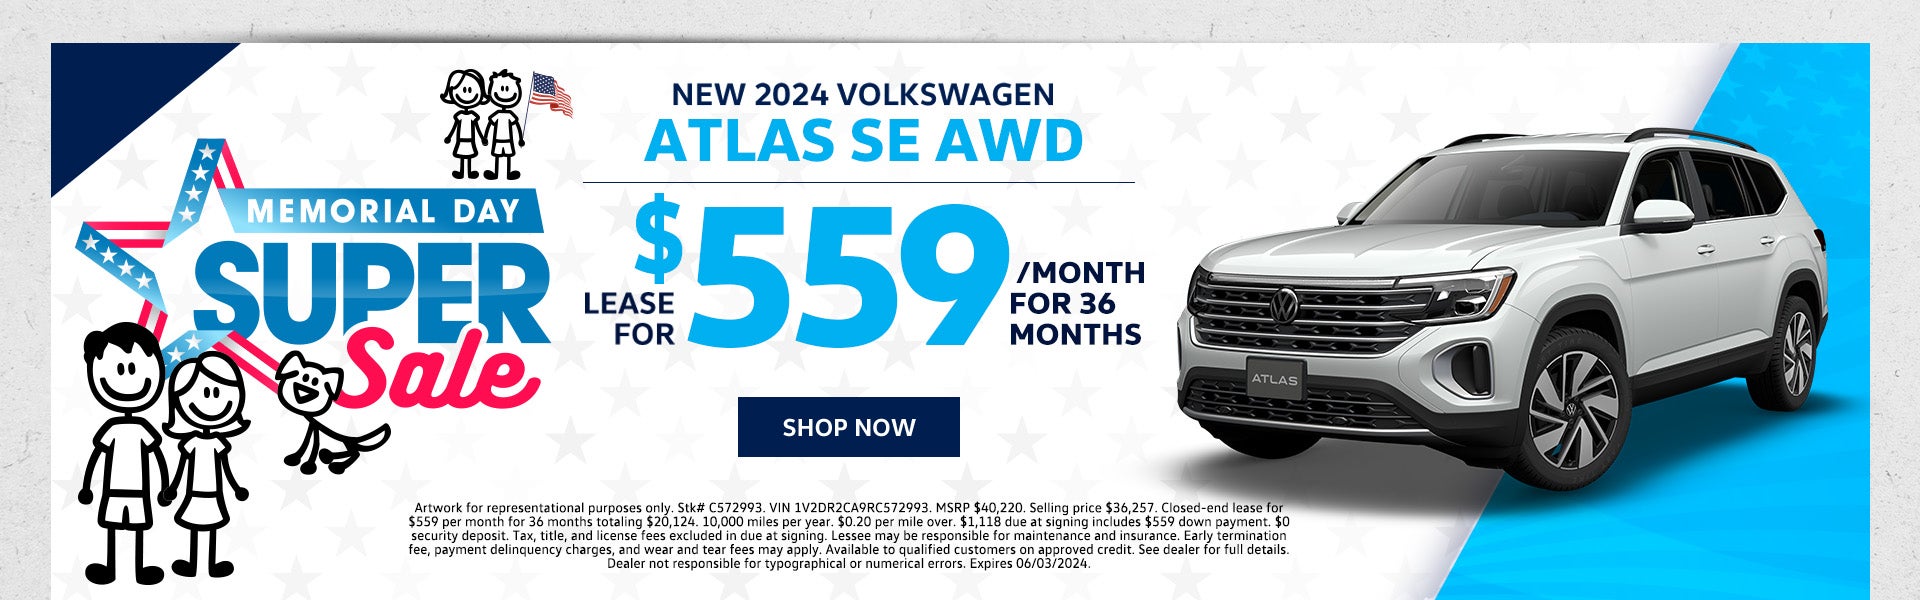 New 2024 VW Atlas SE AWD